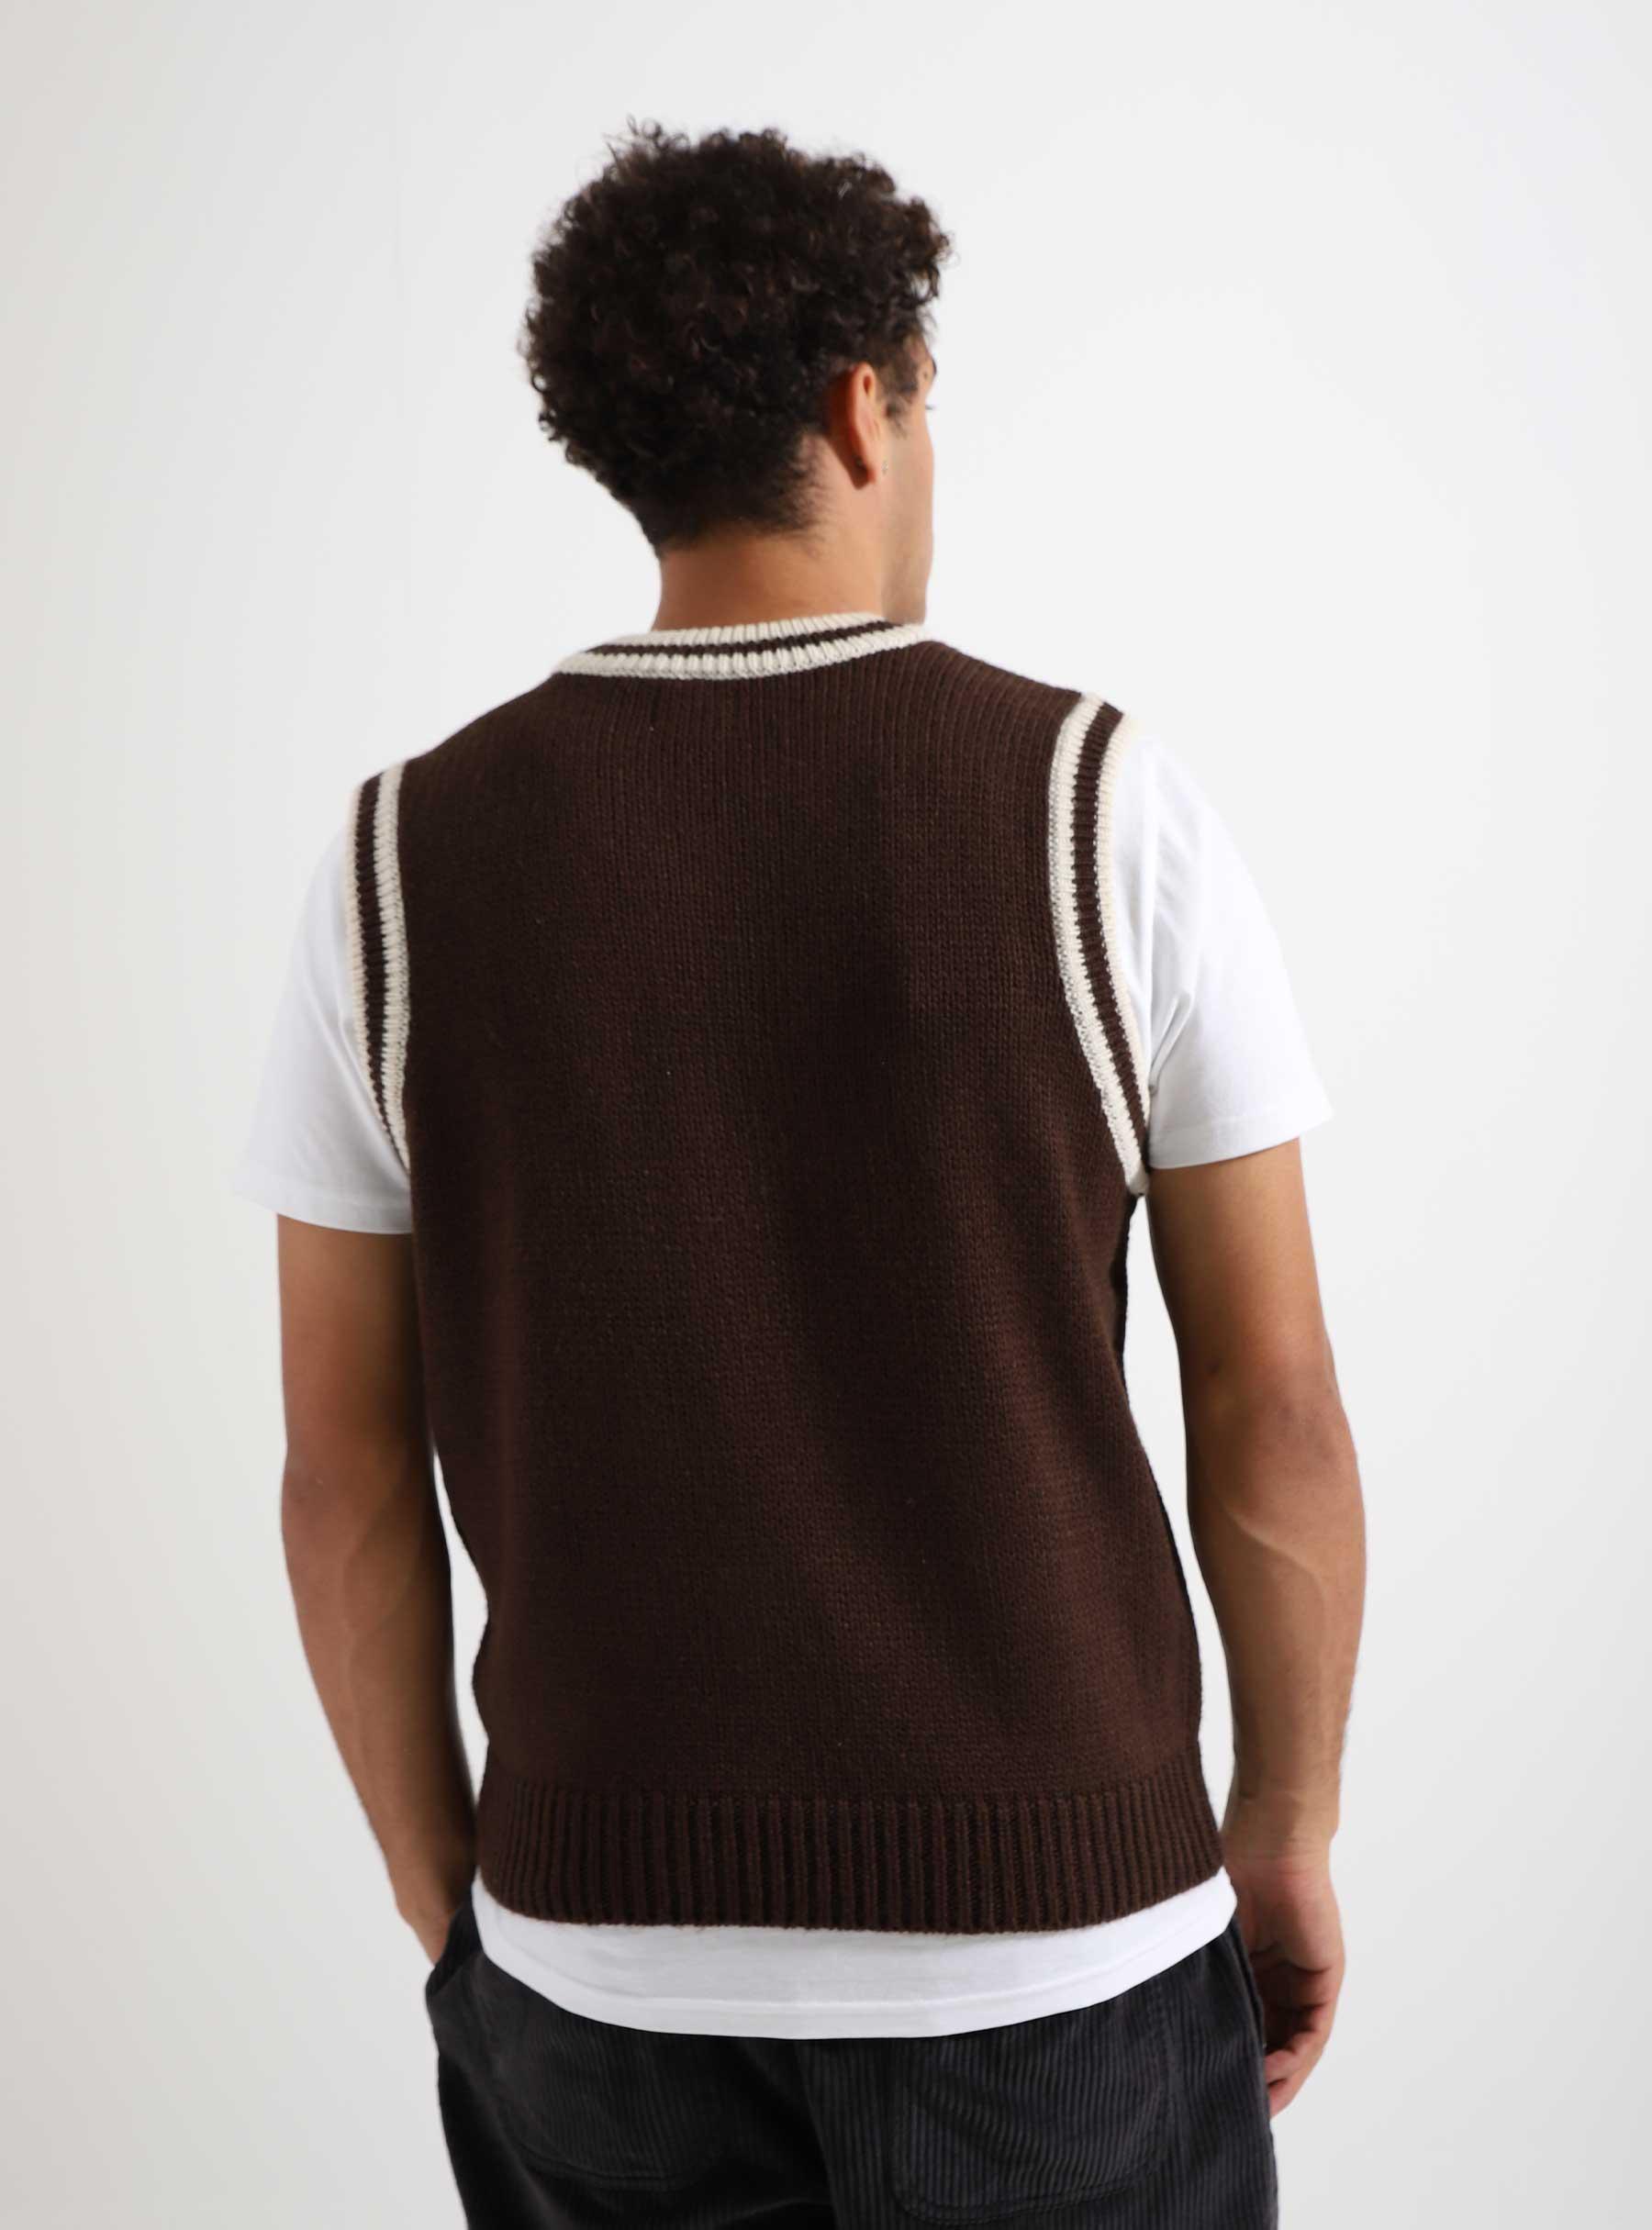 Alden Sweater Vest Java Brown Multi 151000070-JVA